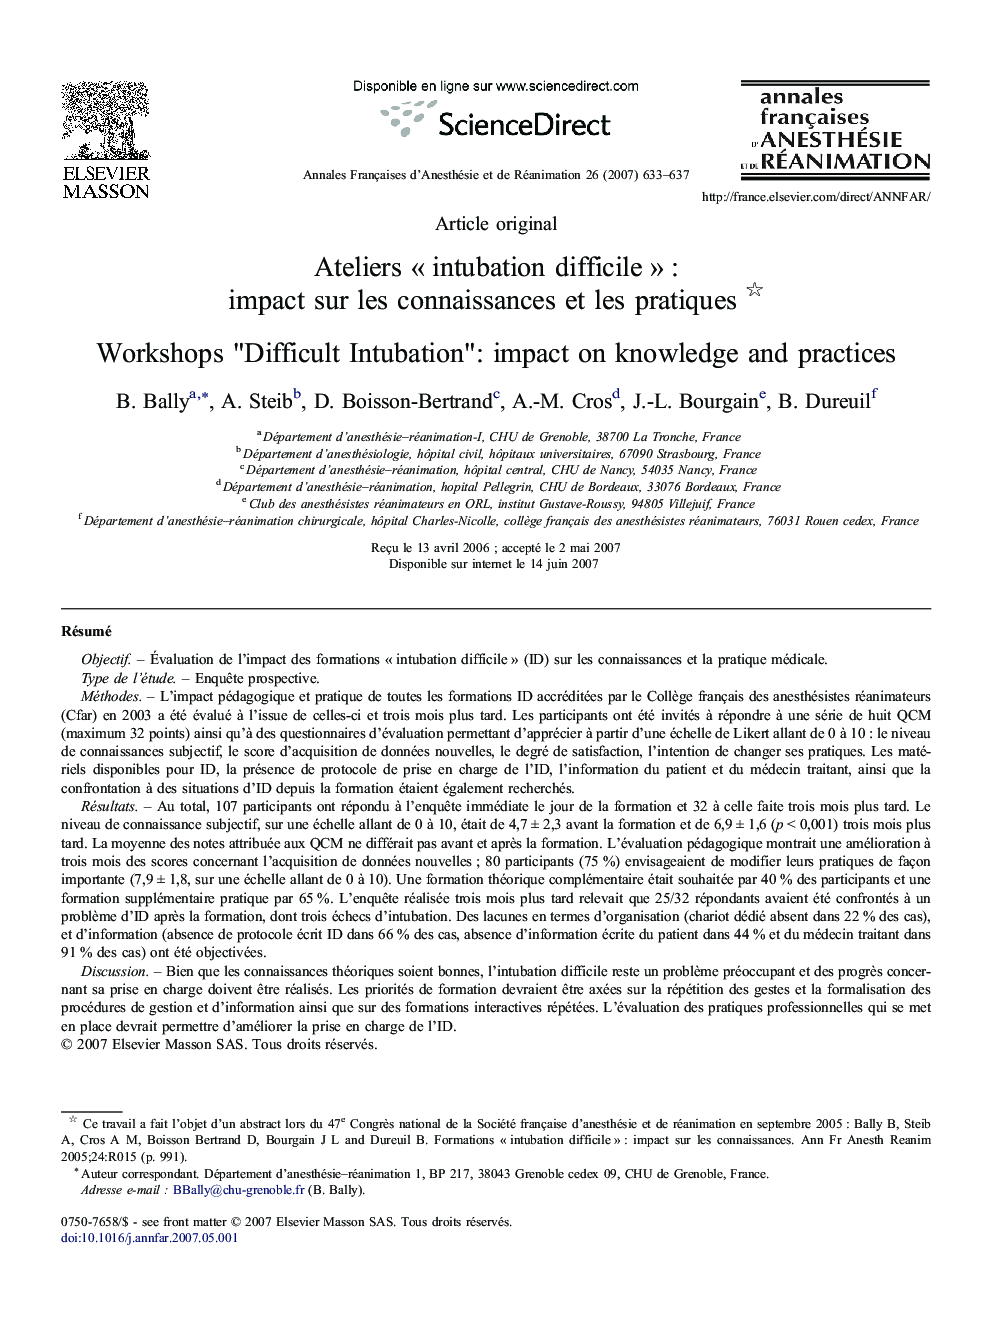 Ateliers « intubation difficile » : impact sur les connaissances et les pratiques 